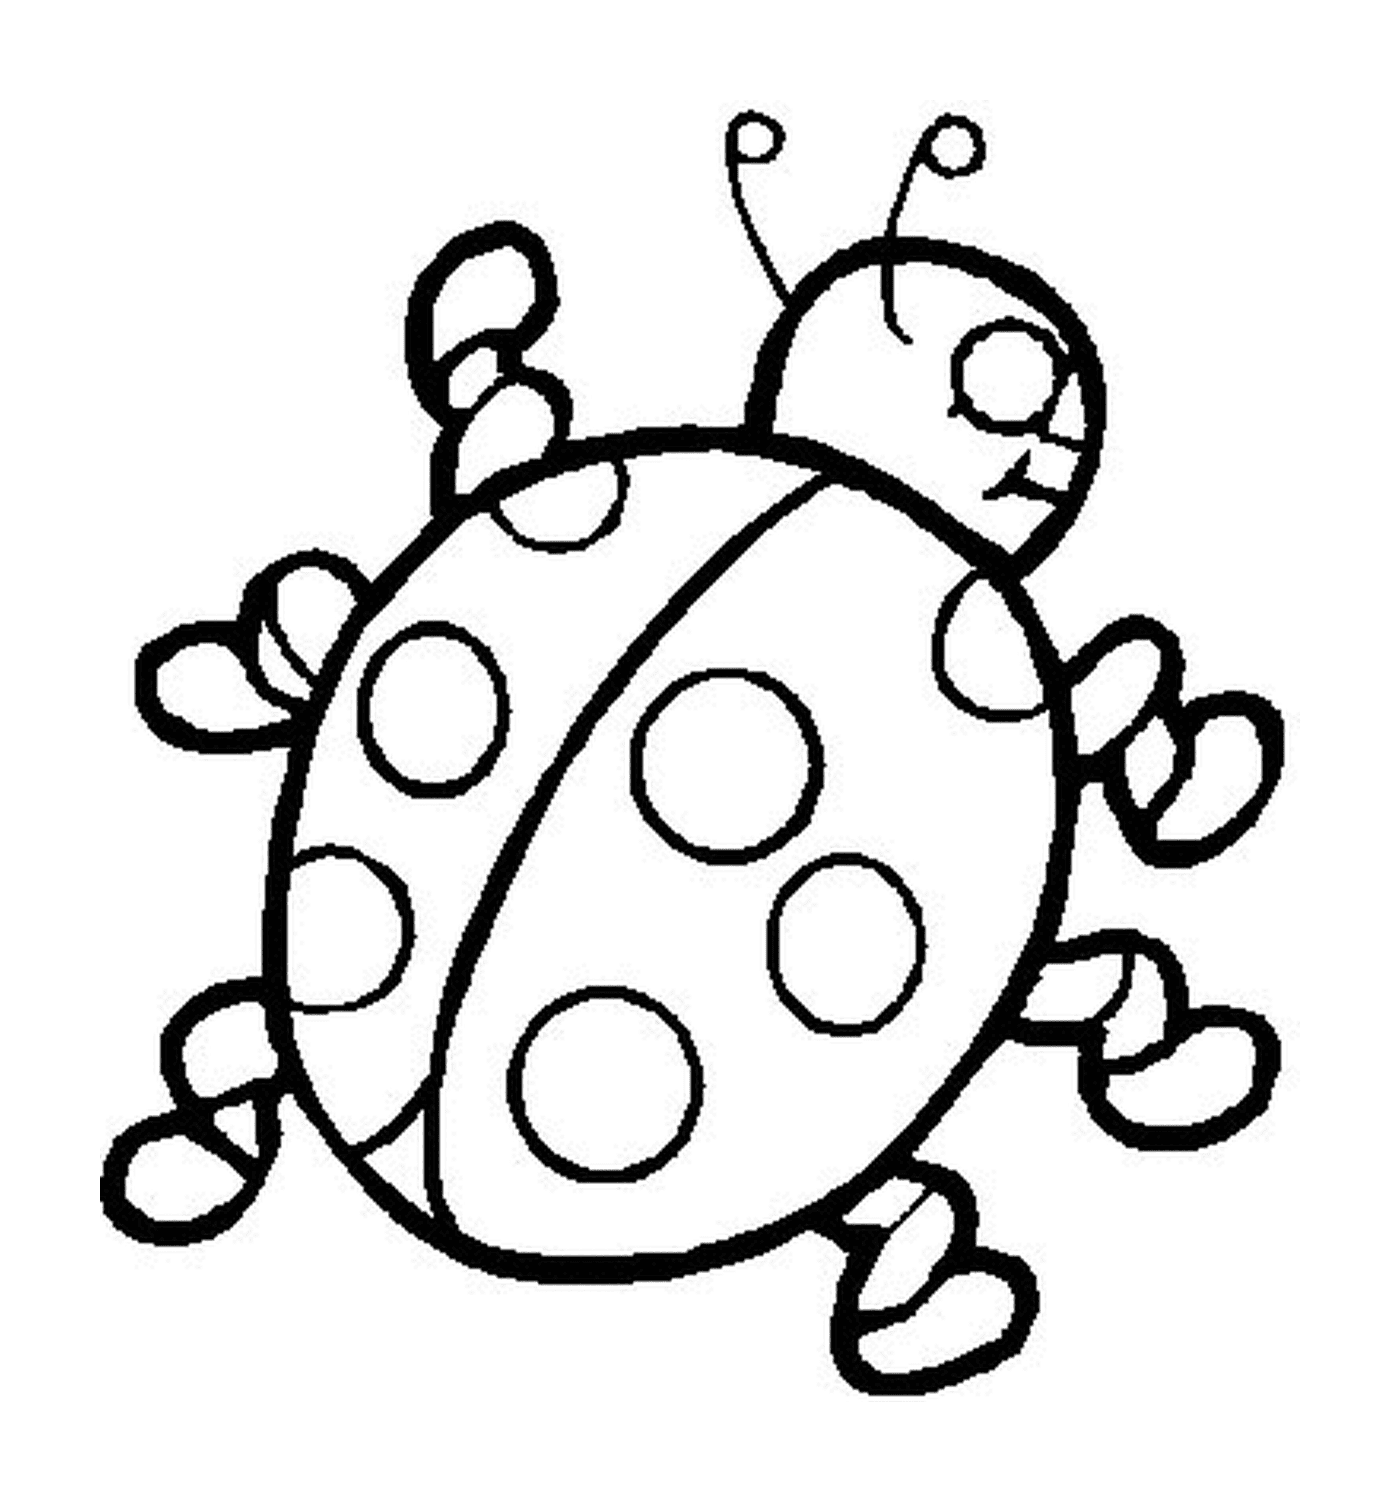  Ladybug with six legs 